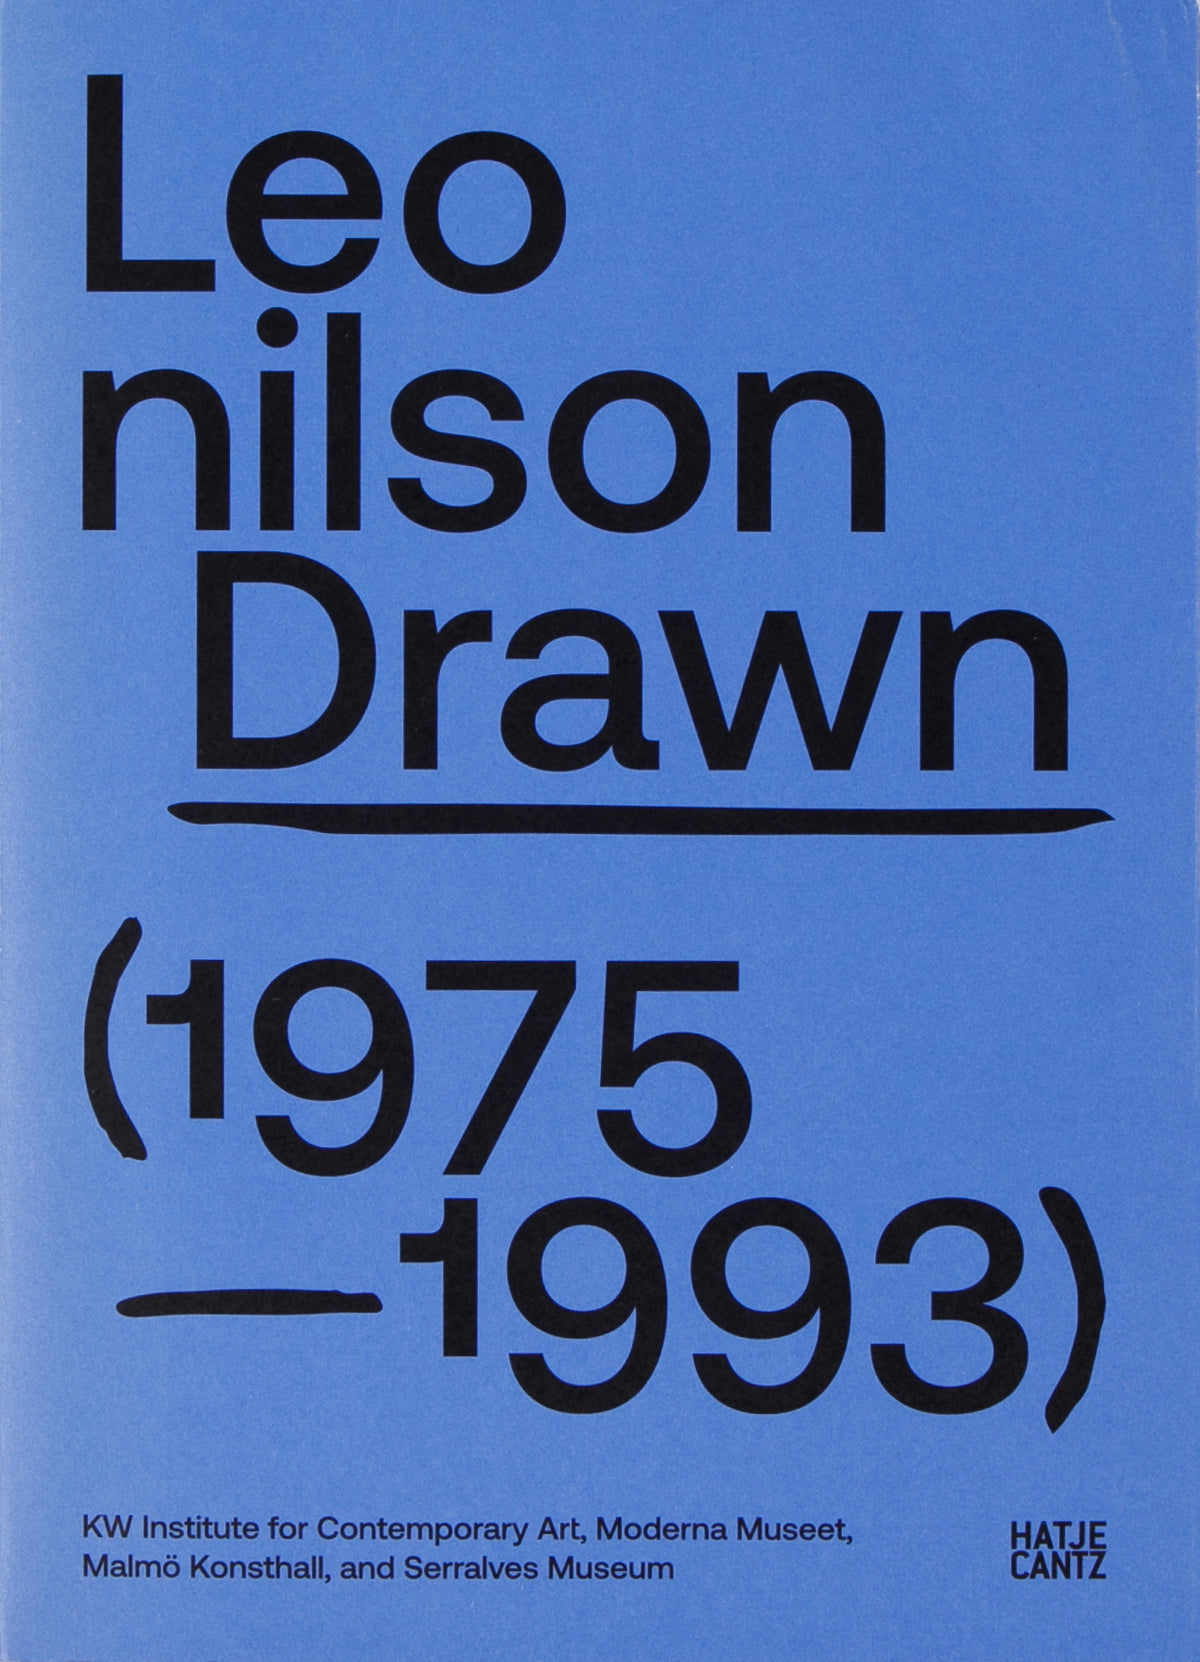 Drawn: 1975–1993